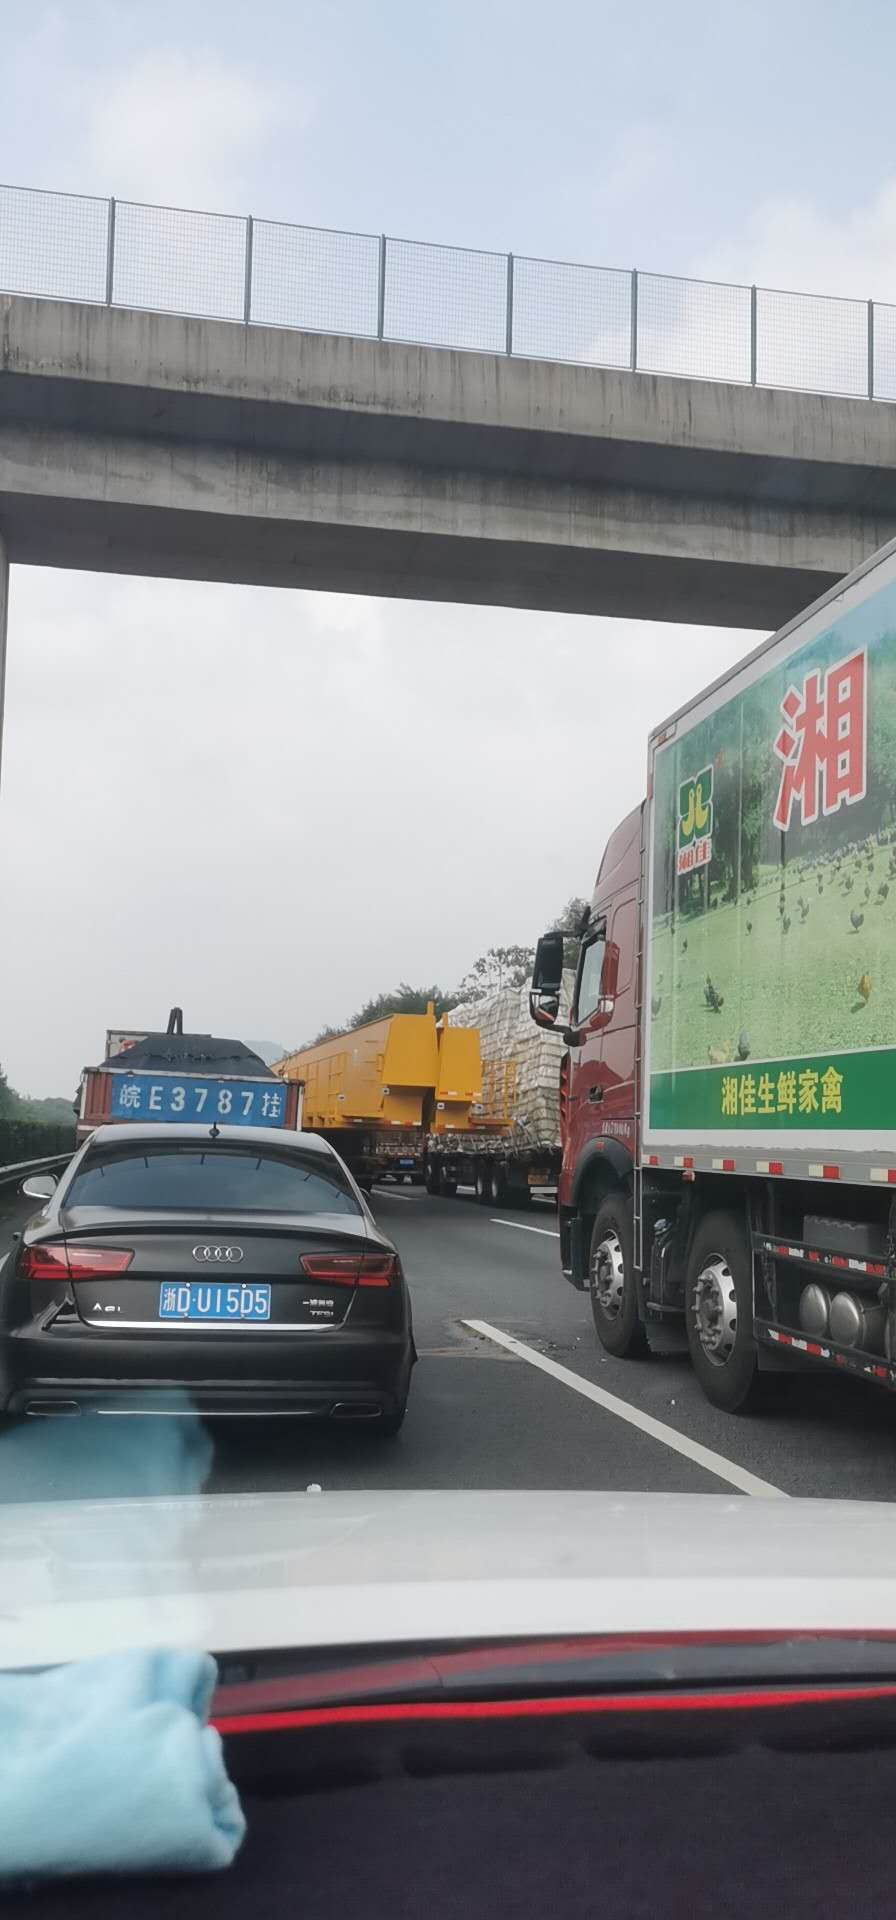 沪武高速路况实时查询:堵车缓行,堵了九个小时了 到底